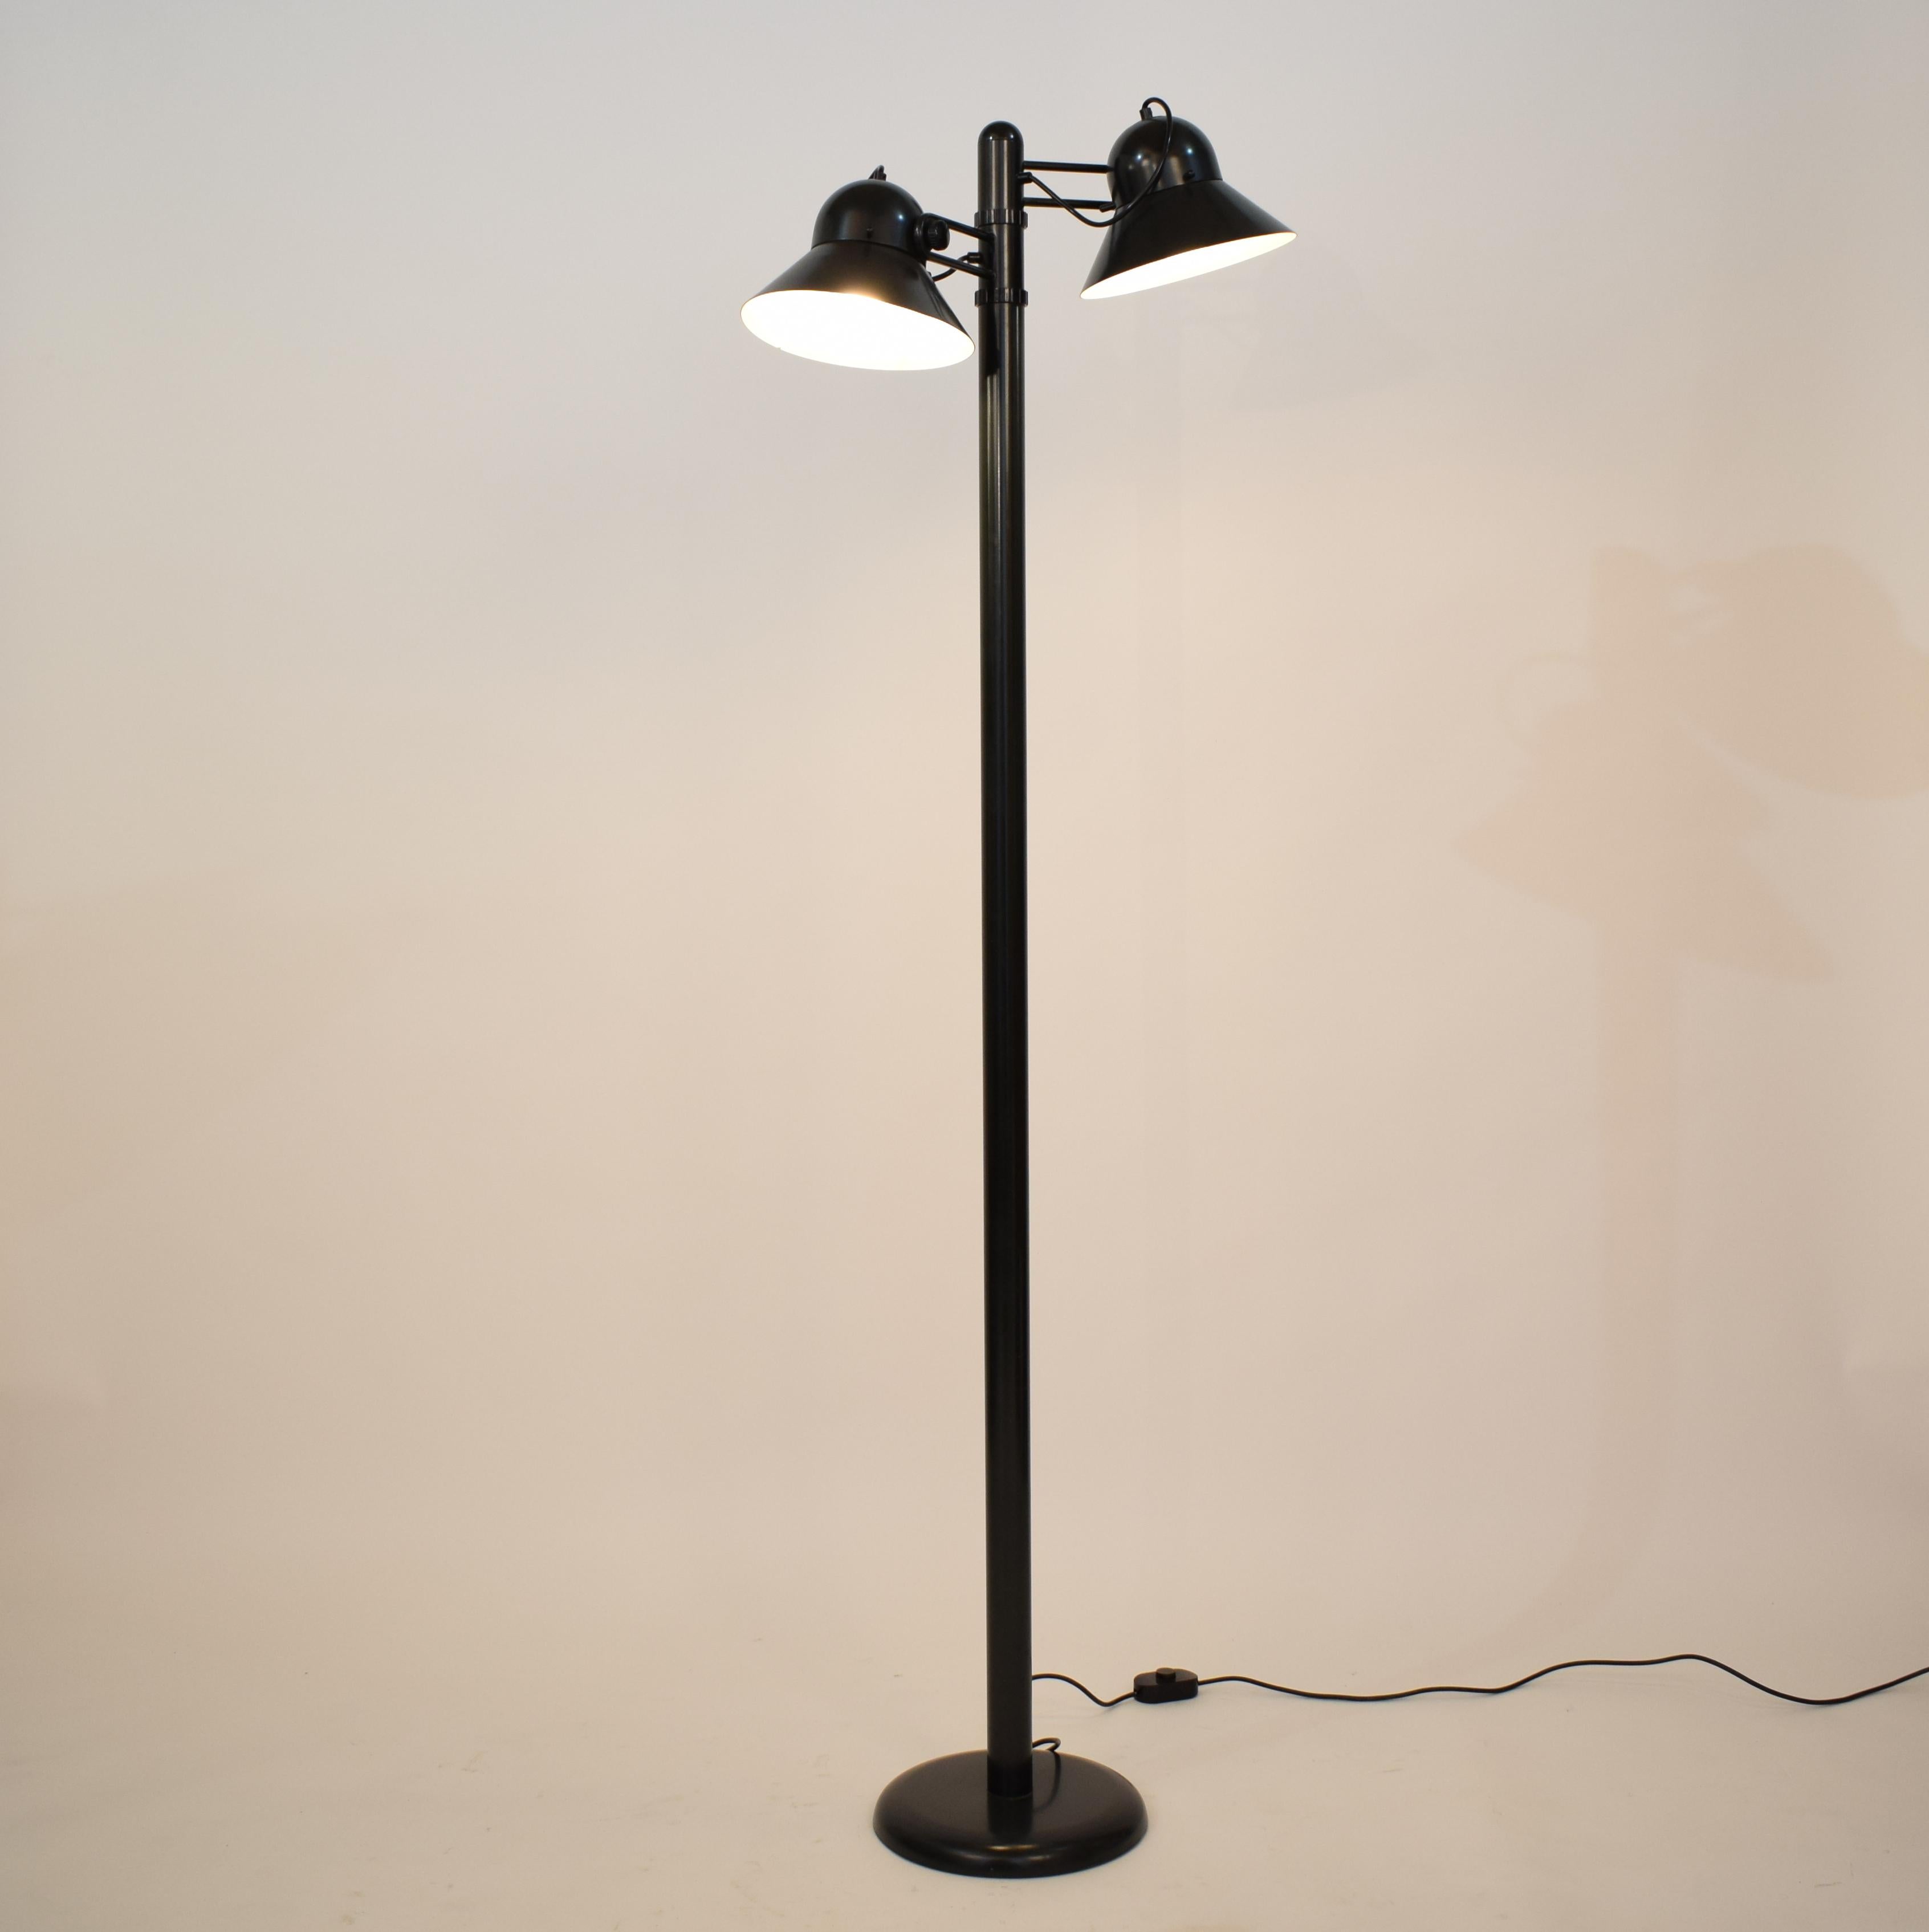 Le lampadaire des années 1970 de Gae Aulenti, qui témoigne de l'éclat du design italien, apparaît comme un chef-d'œuvre rare et convoité, fabriqué par Stilnovo. 
Fabrice en métal laqué vert militaire, ce luminaire distinctif fusionne harmonieusement